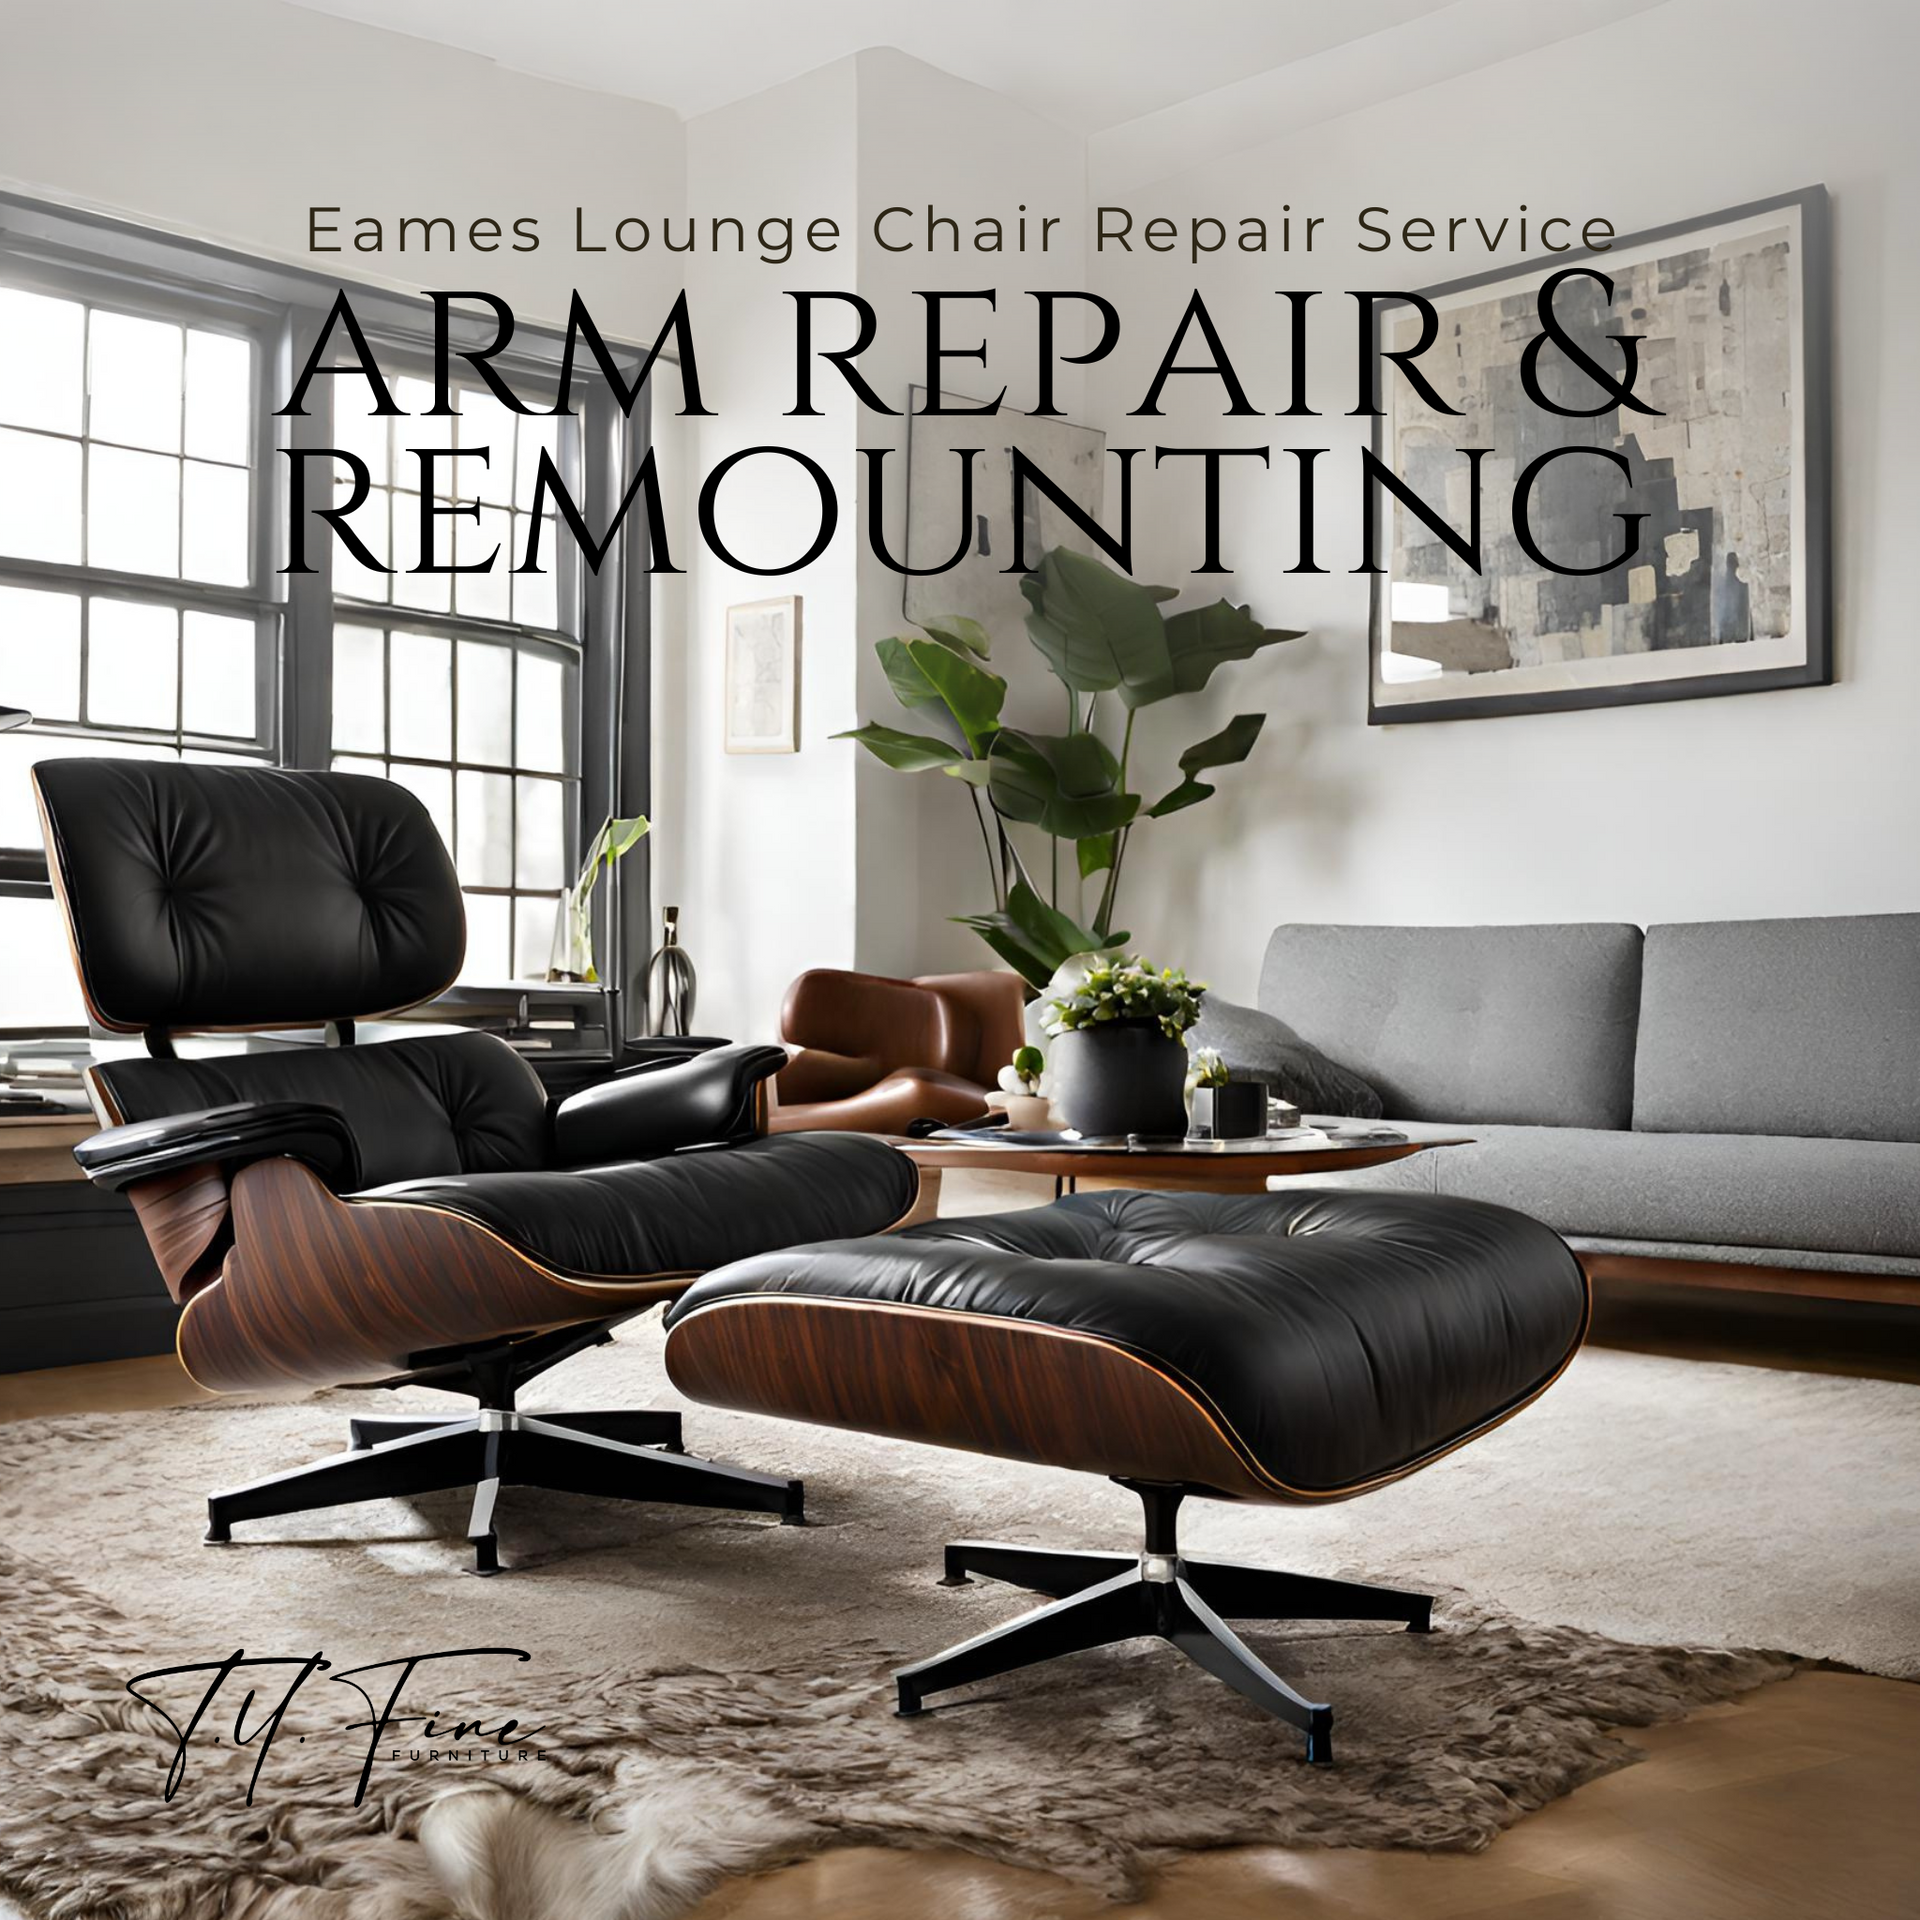 Eames Lounge Chair Arm Repair Service